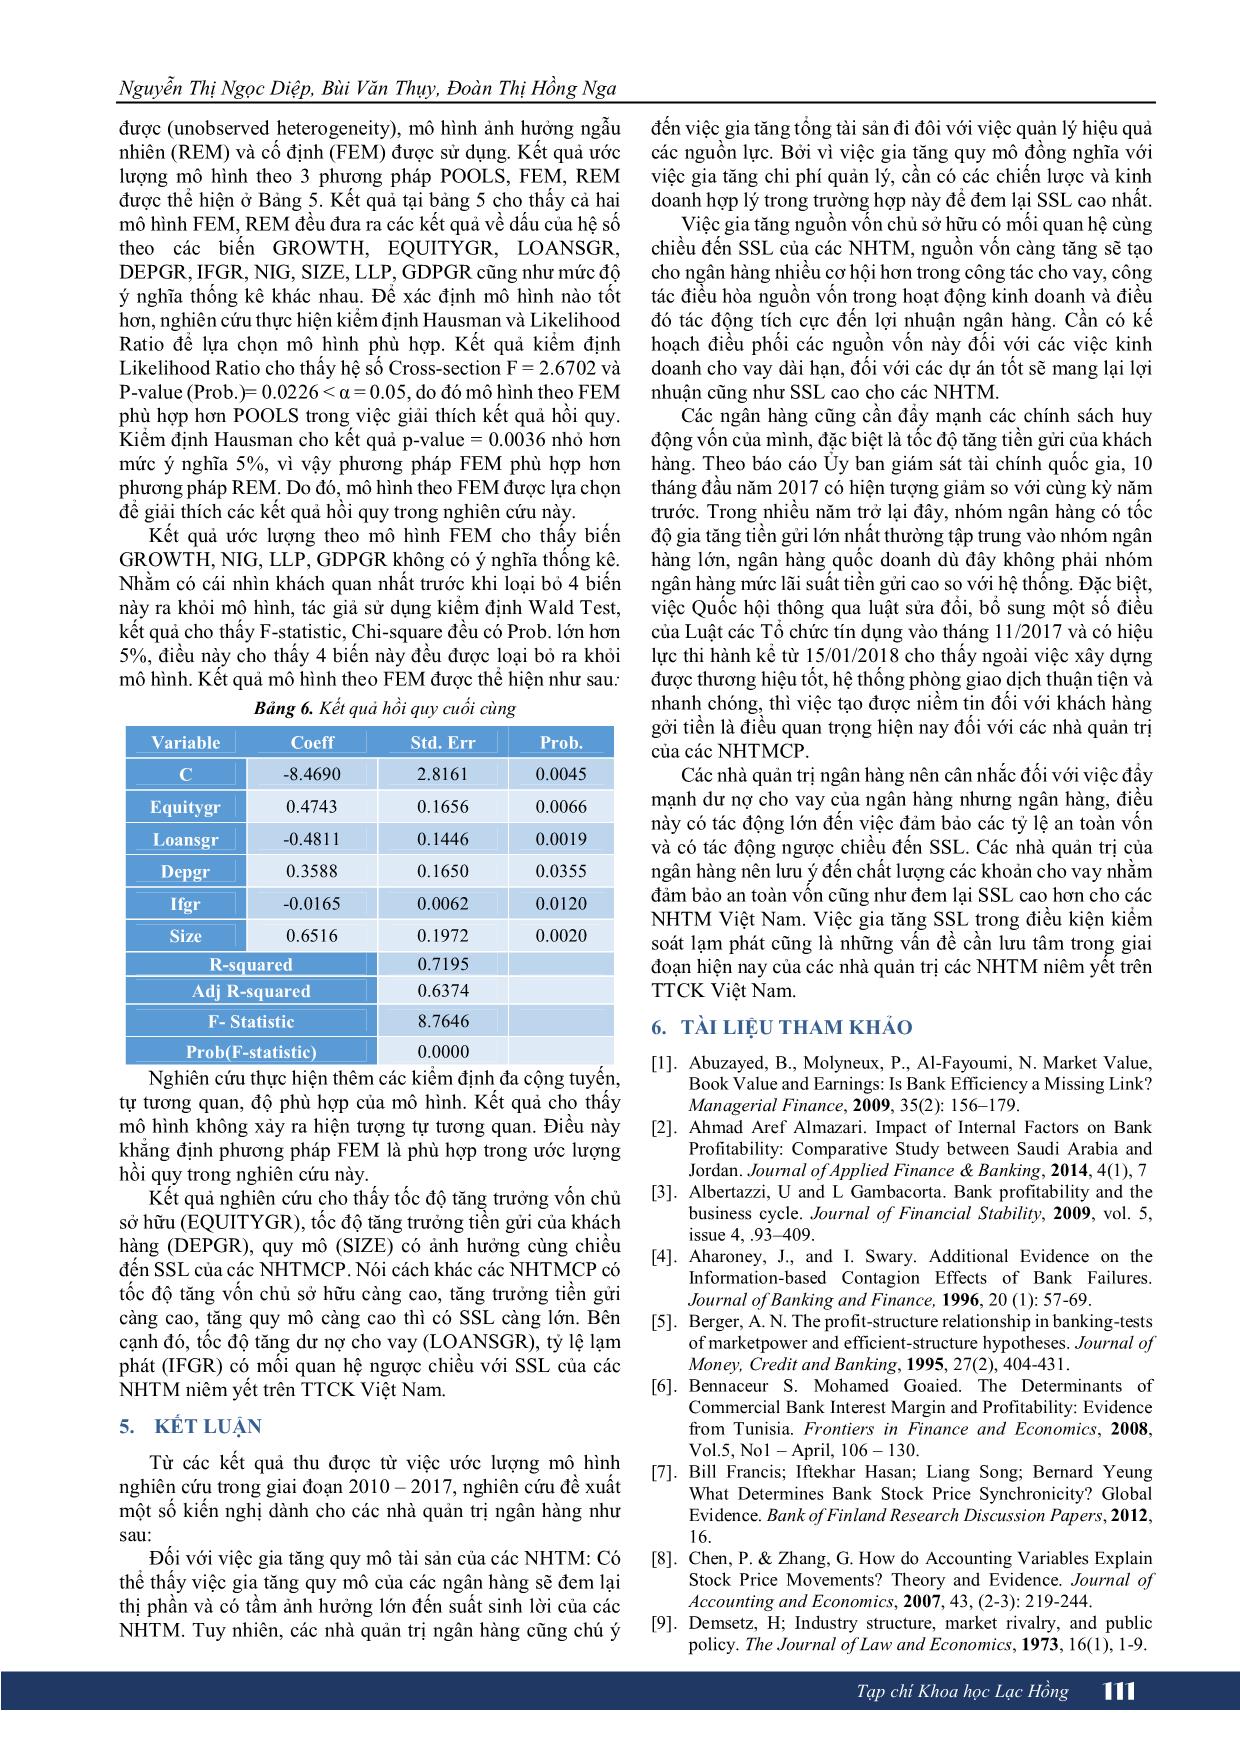 Tác động của tăng trưởng đến suất sinh lợi của các ngân hàng thương mại niêm yết tại thị trường chứng khoán Việt Nam trang 5